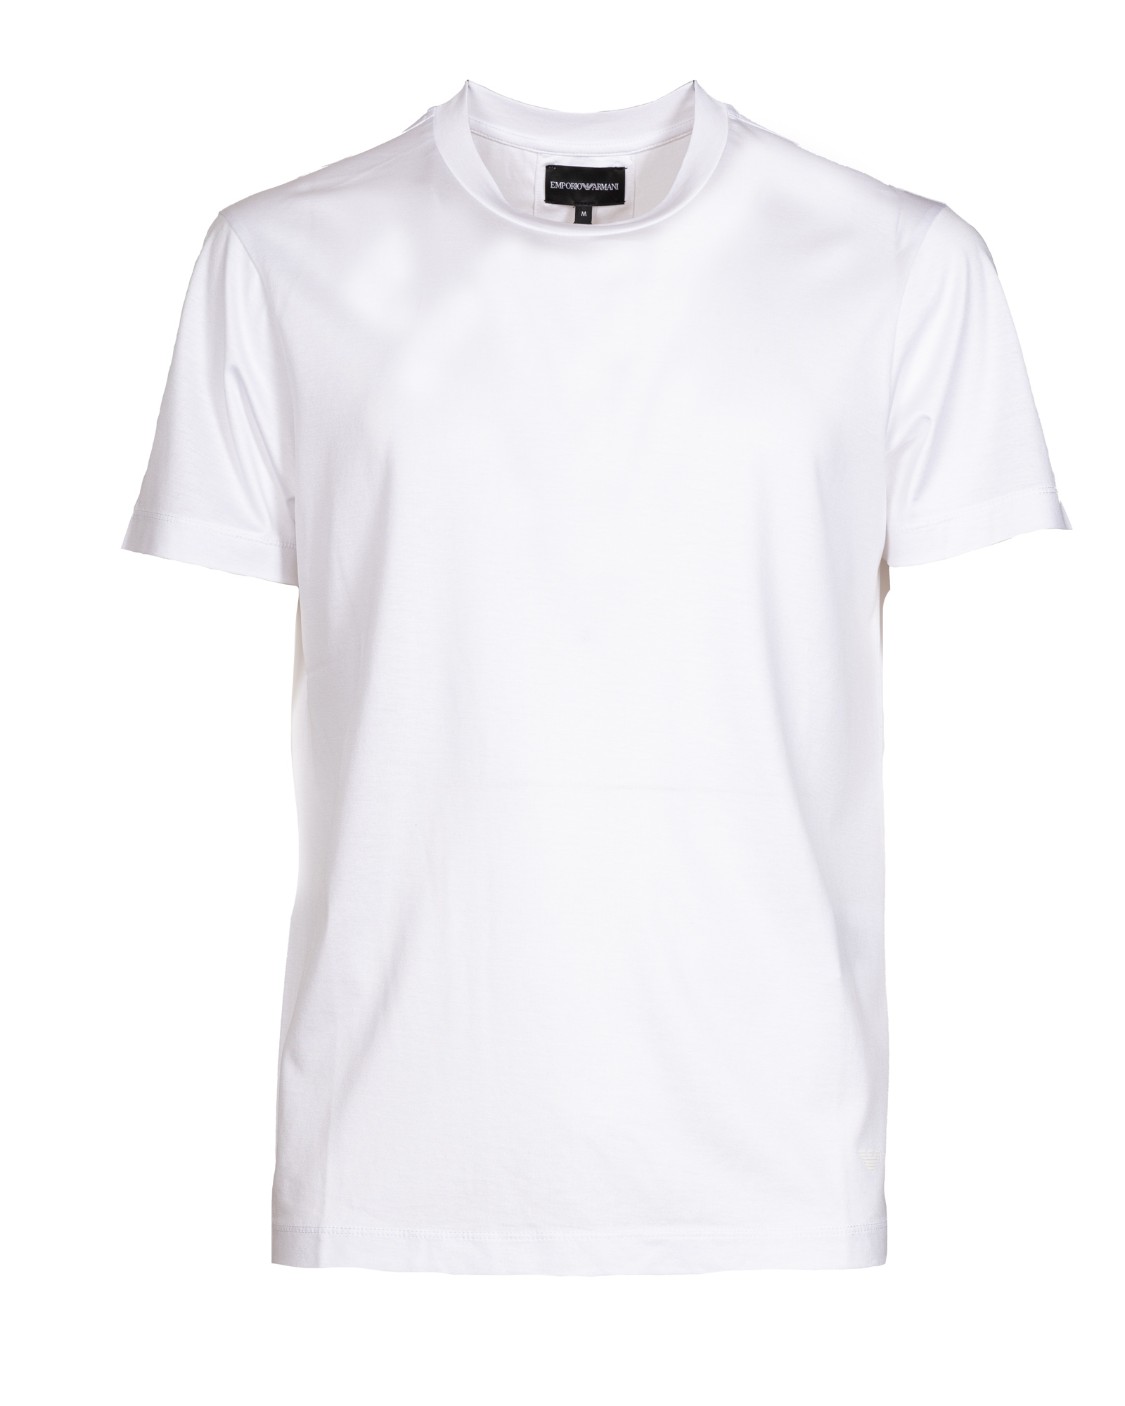 shop EMPORIO ARMANI  T-shirt: Emporio Armani t-shirt in cotone elasticizzato.
Scollo rotondo.
Maniche corte.
Composizione: 70% lyocell 30% cotone.
Fabbricato in Cina.. 8N1TE8 1JUVZ-0100 number 2002845